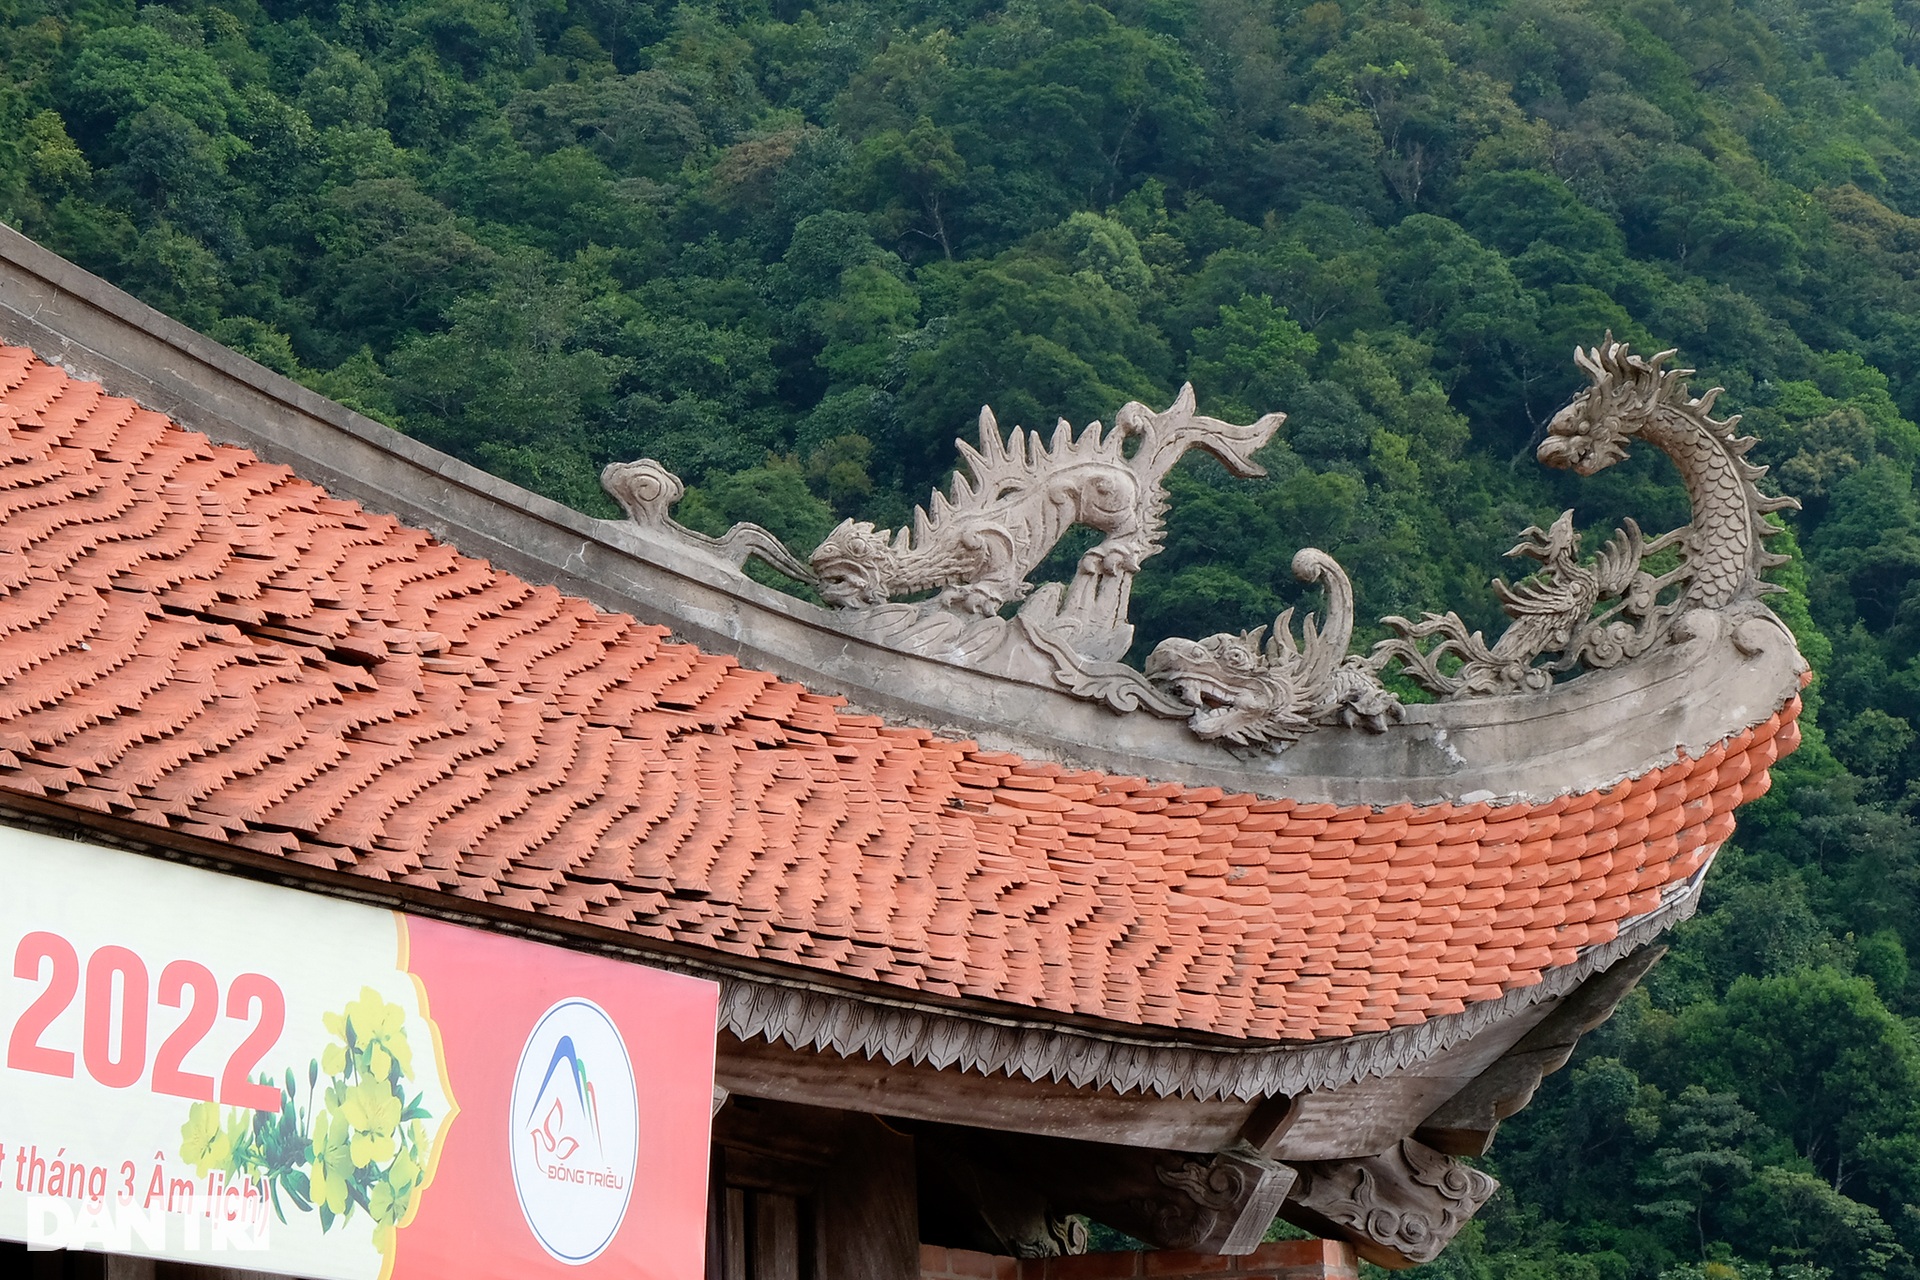 Chiêm ngưỡng ngôi chùa cổ cheo leo trên đỉnh núi ở Quảng Ninh - 4